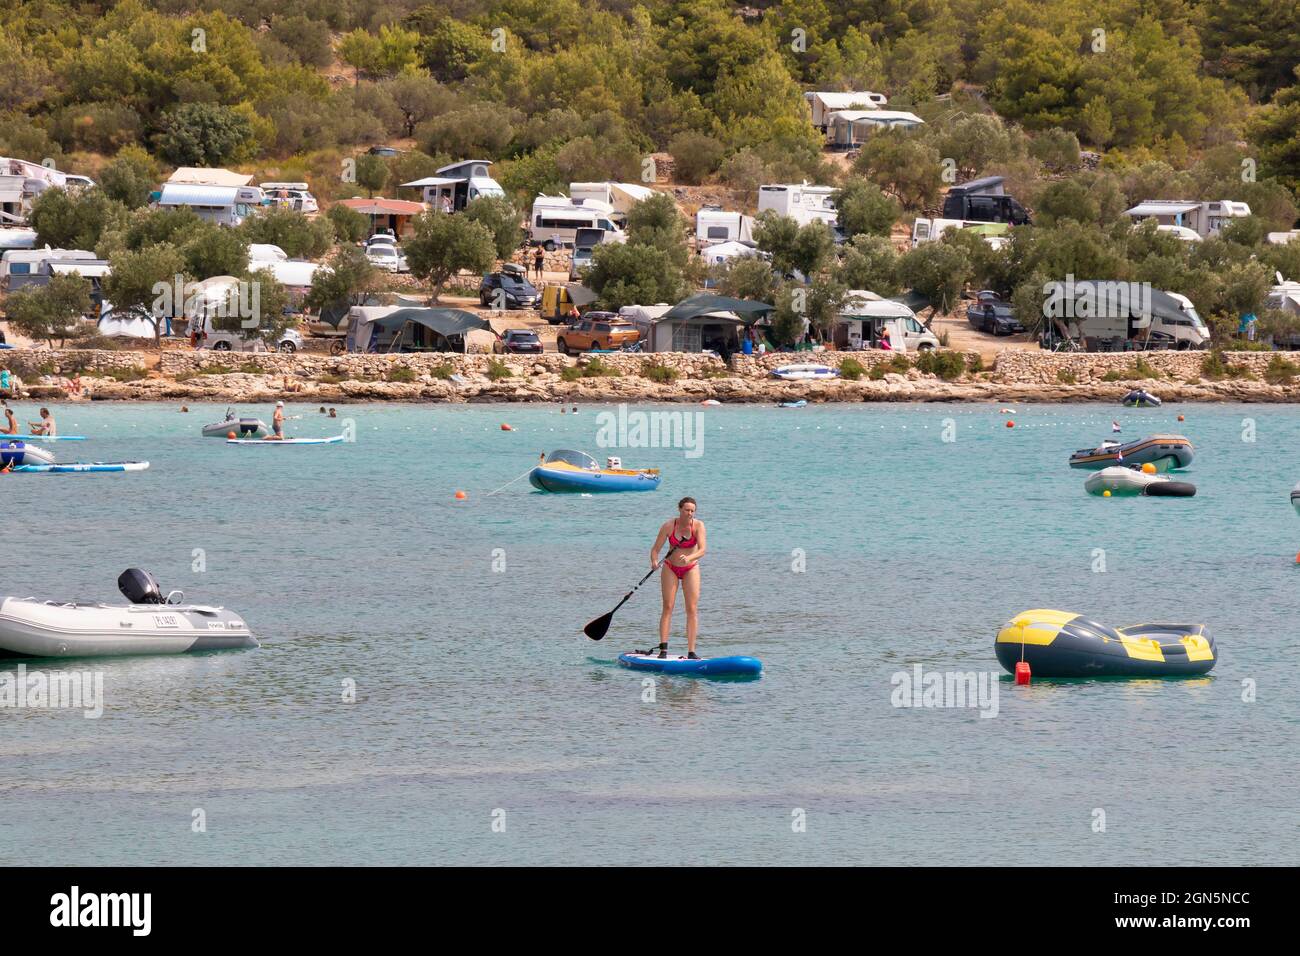 Kosirina, Murter, Croacia - 24 de agosto de 2021: Botes inflables amarrados en una tranquila bahía y gente remando en tablas de pie, en una playa de camping Foto de stock